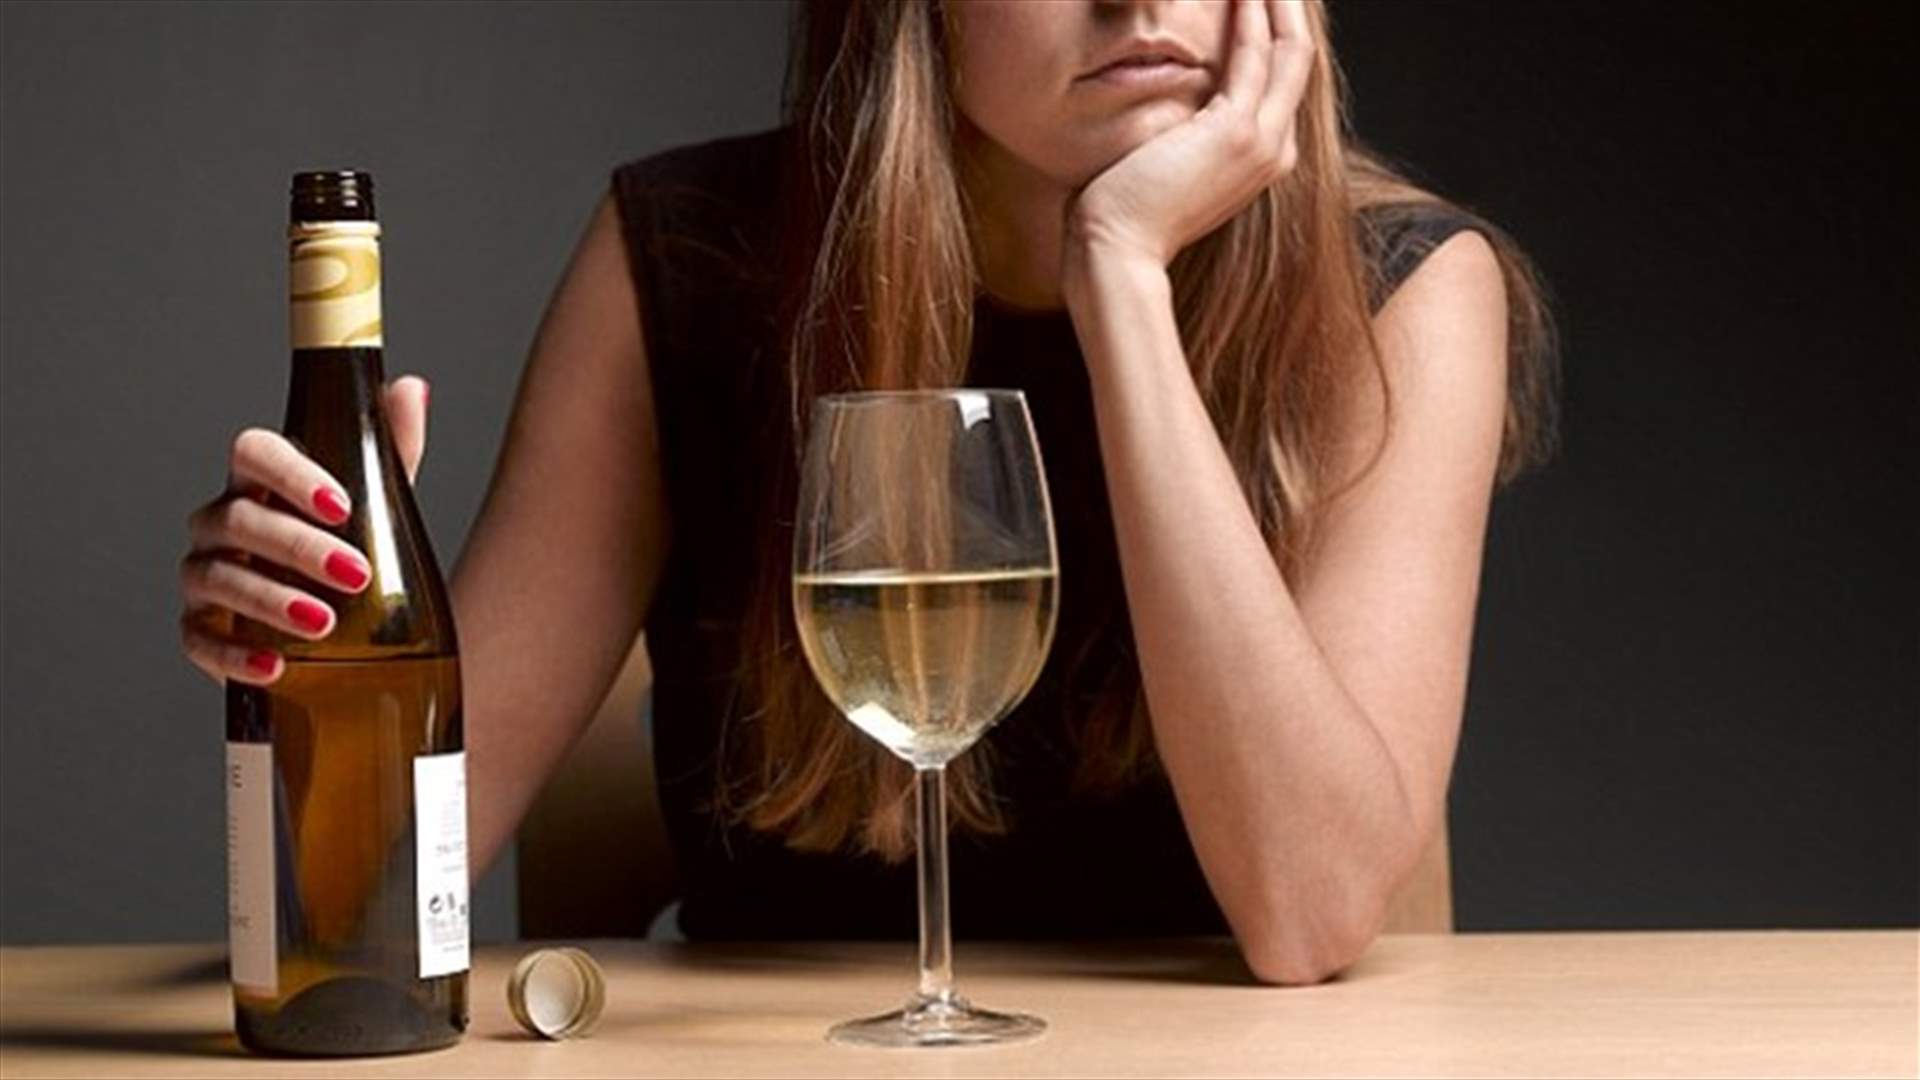 لماذا نشرب كمية أكبر من الكحول عندما نشعر بالإجهاد؟